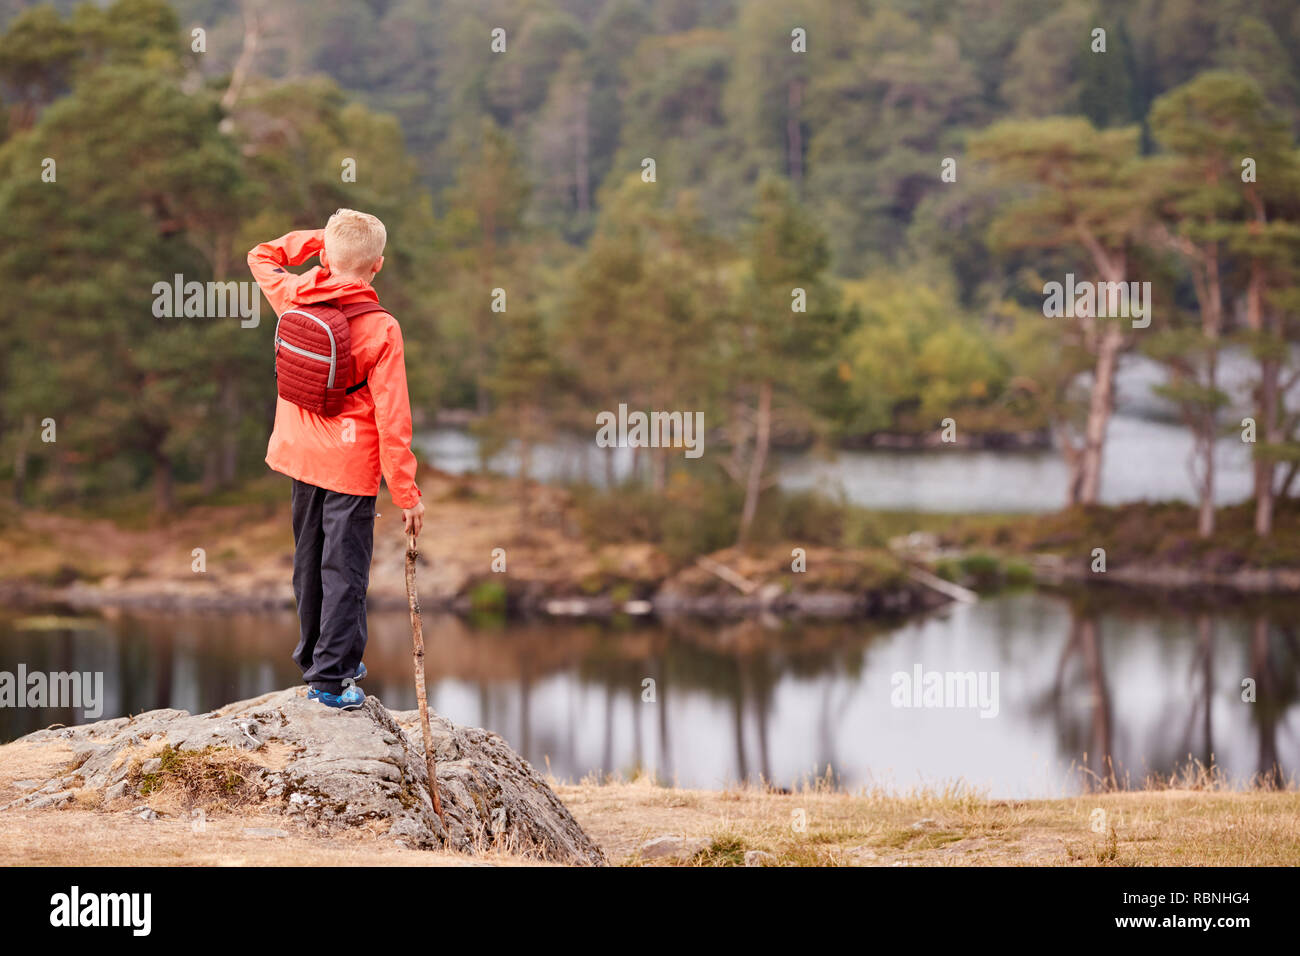 Un garçon debout sur un rocher tenant un bâton, en admirant une vue sur le lac, vue de dos, Lake District, UK Banque D'Images